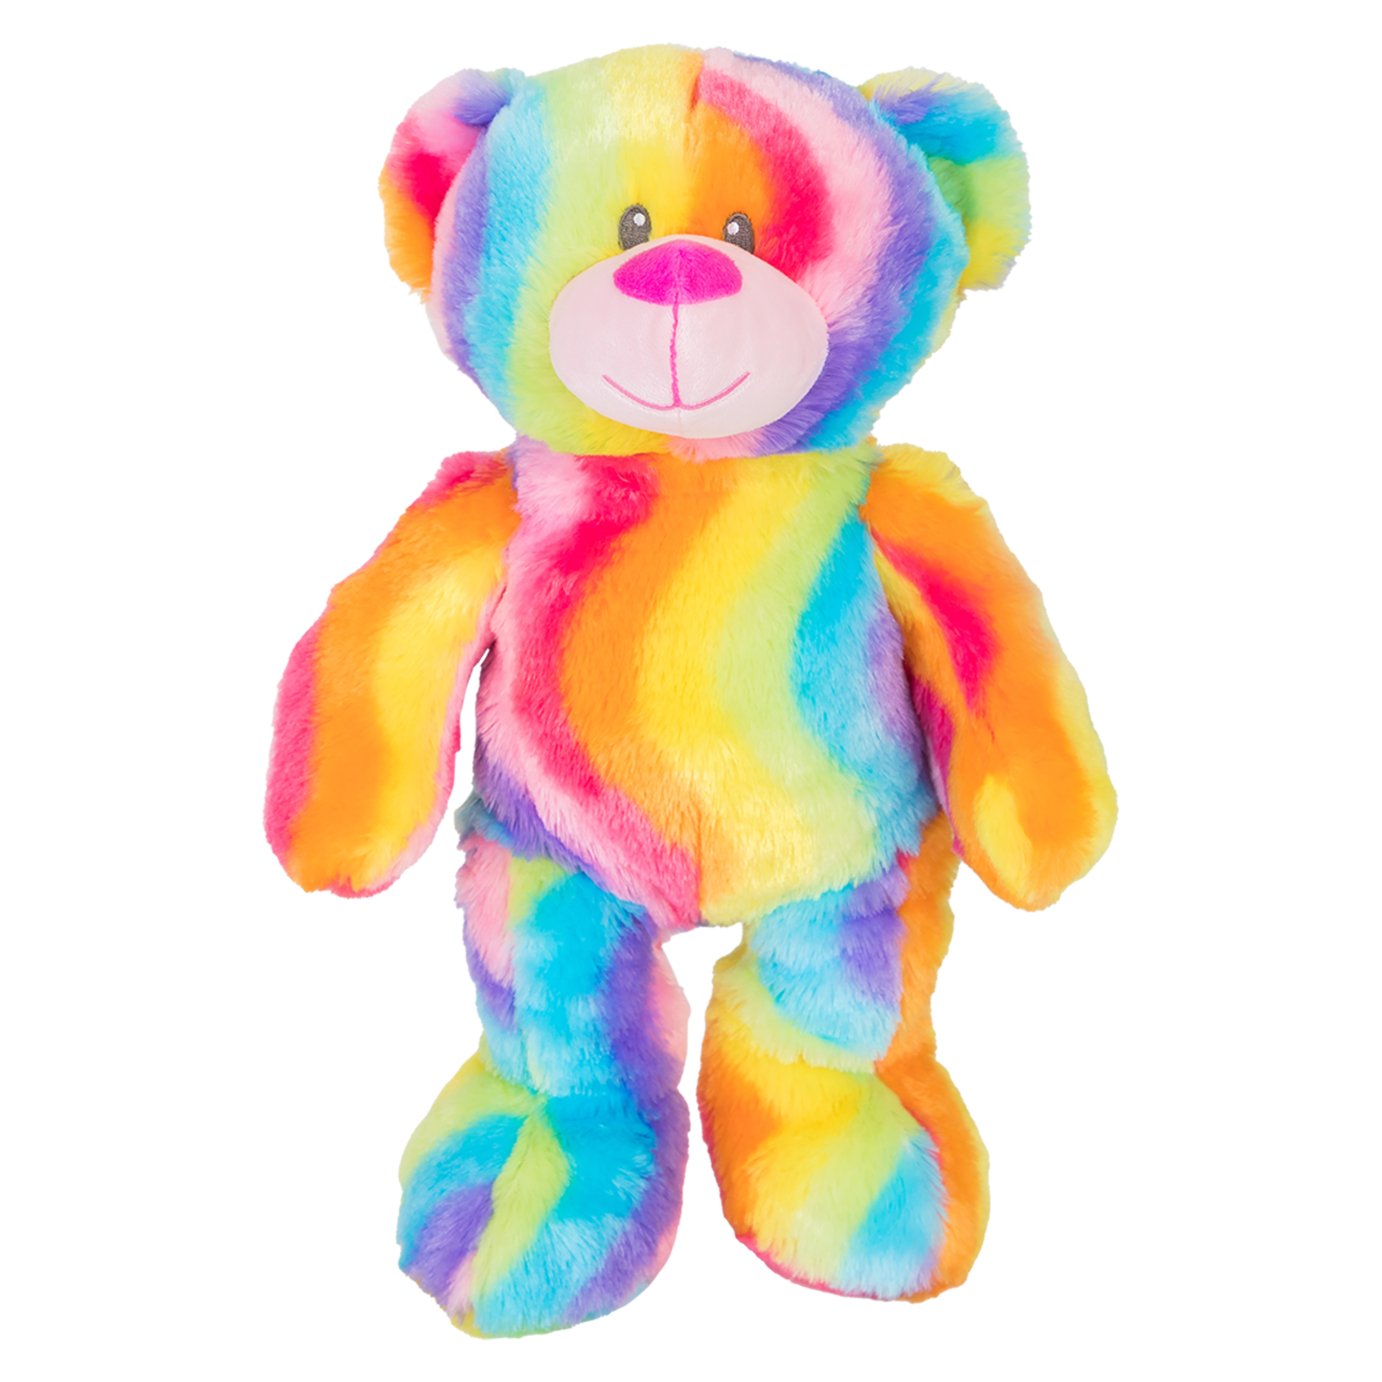 soft teddy bears